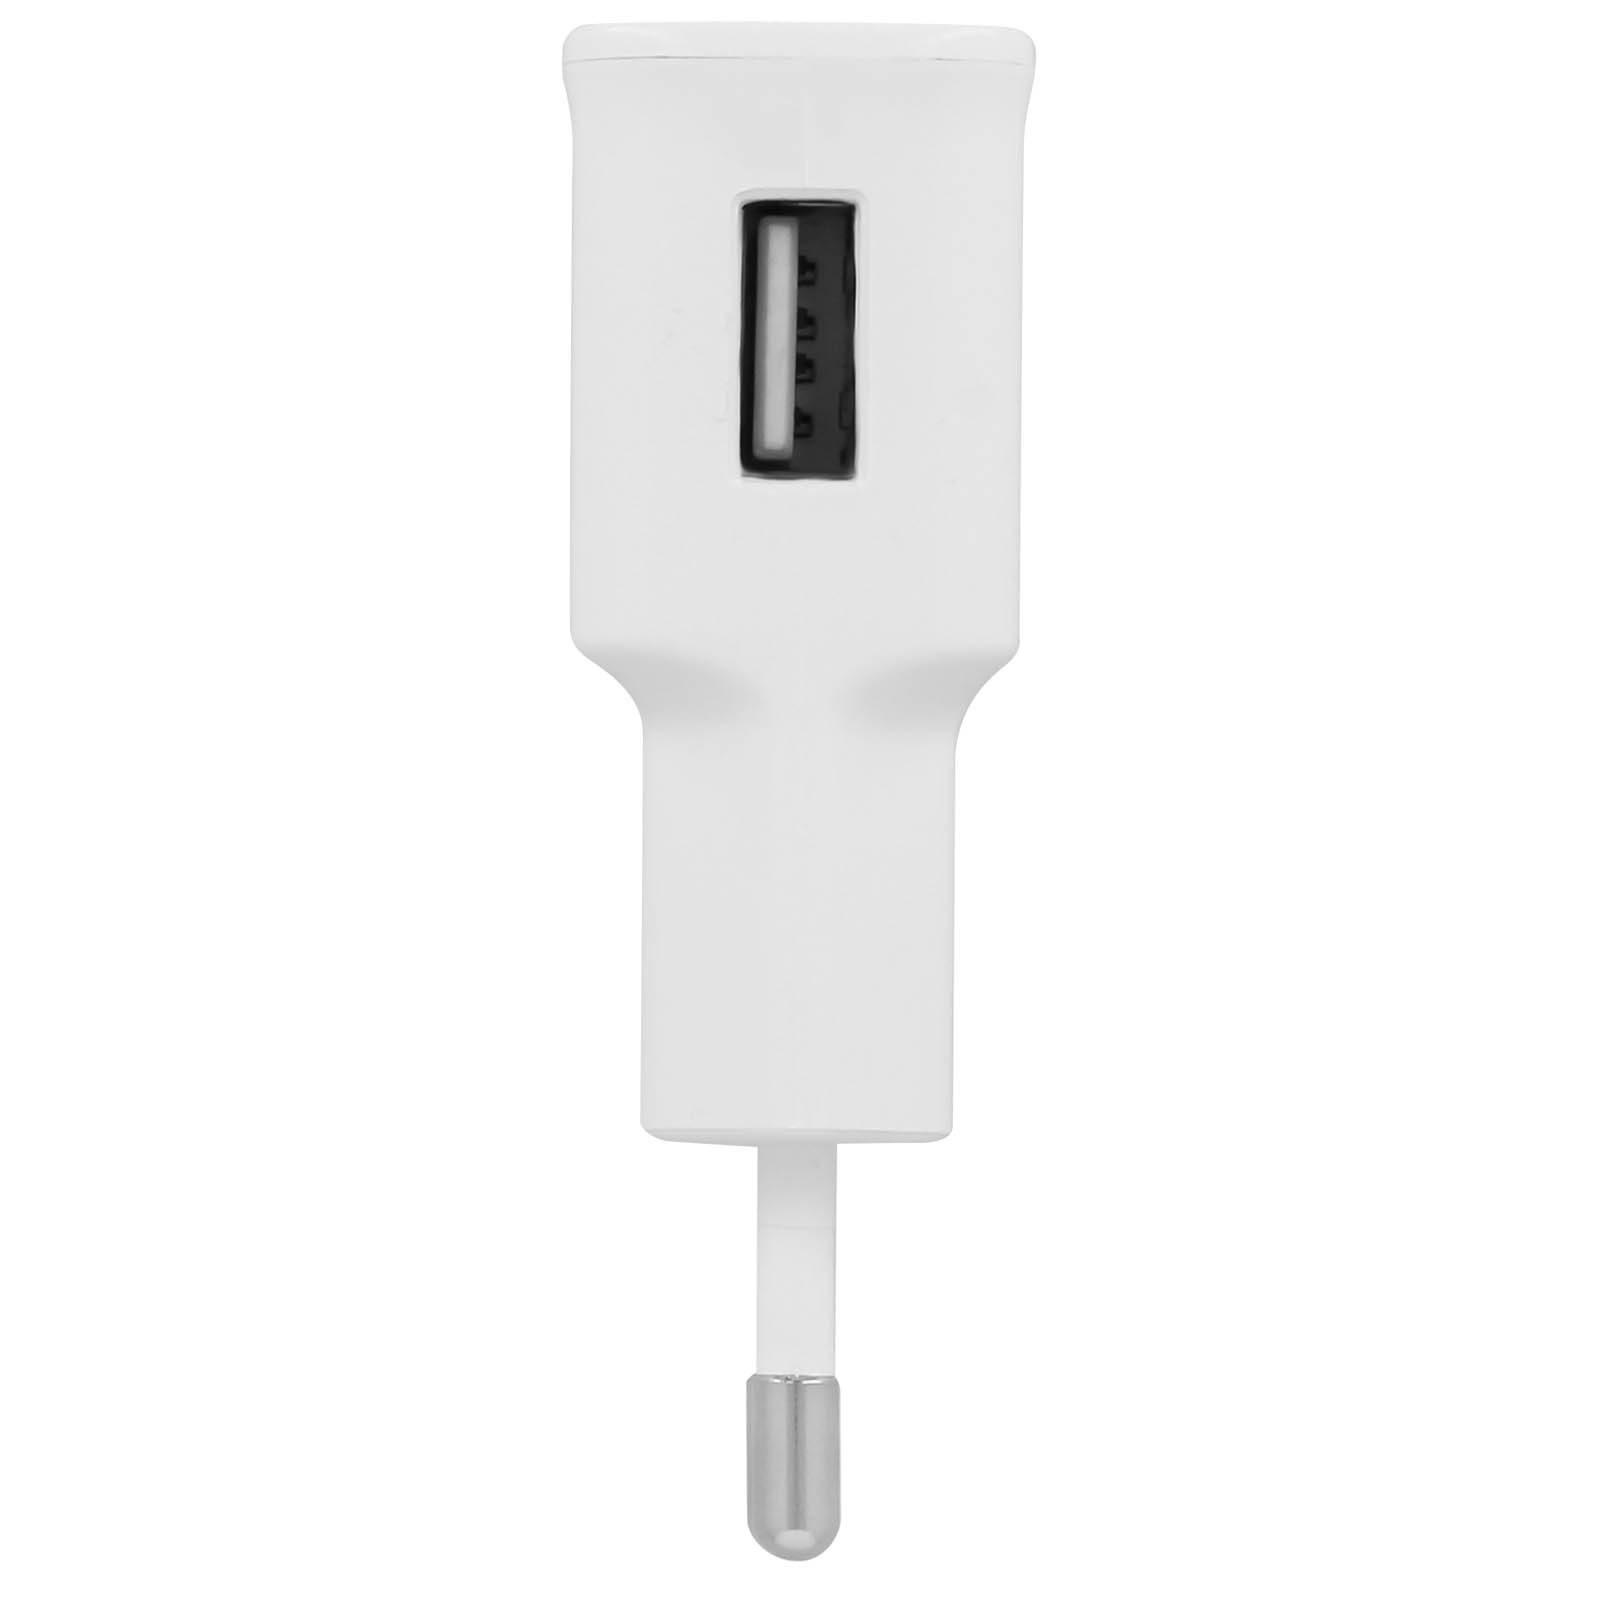 SAMSUNG ETA90 Netzteil, Micro-USB Netzteile Universal, Wand-Ladegerät 2A Weiß